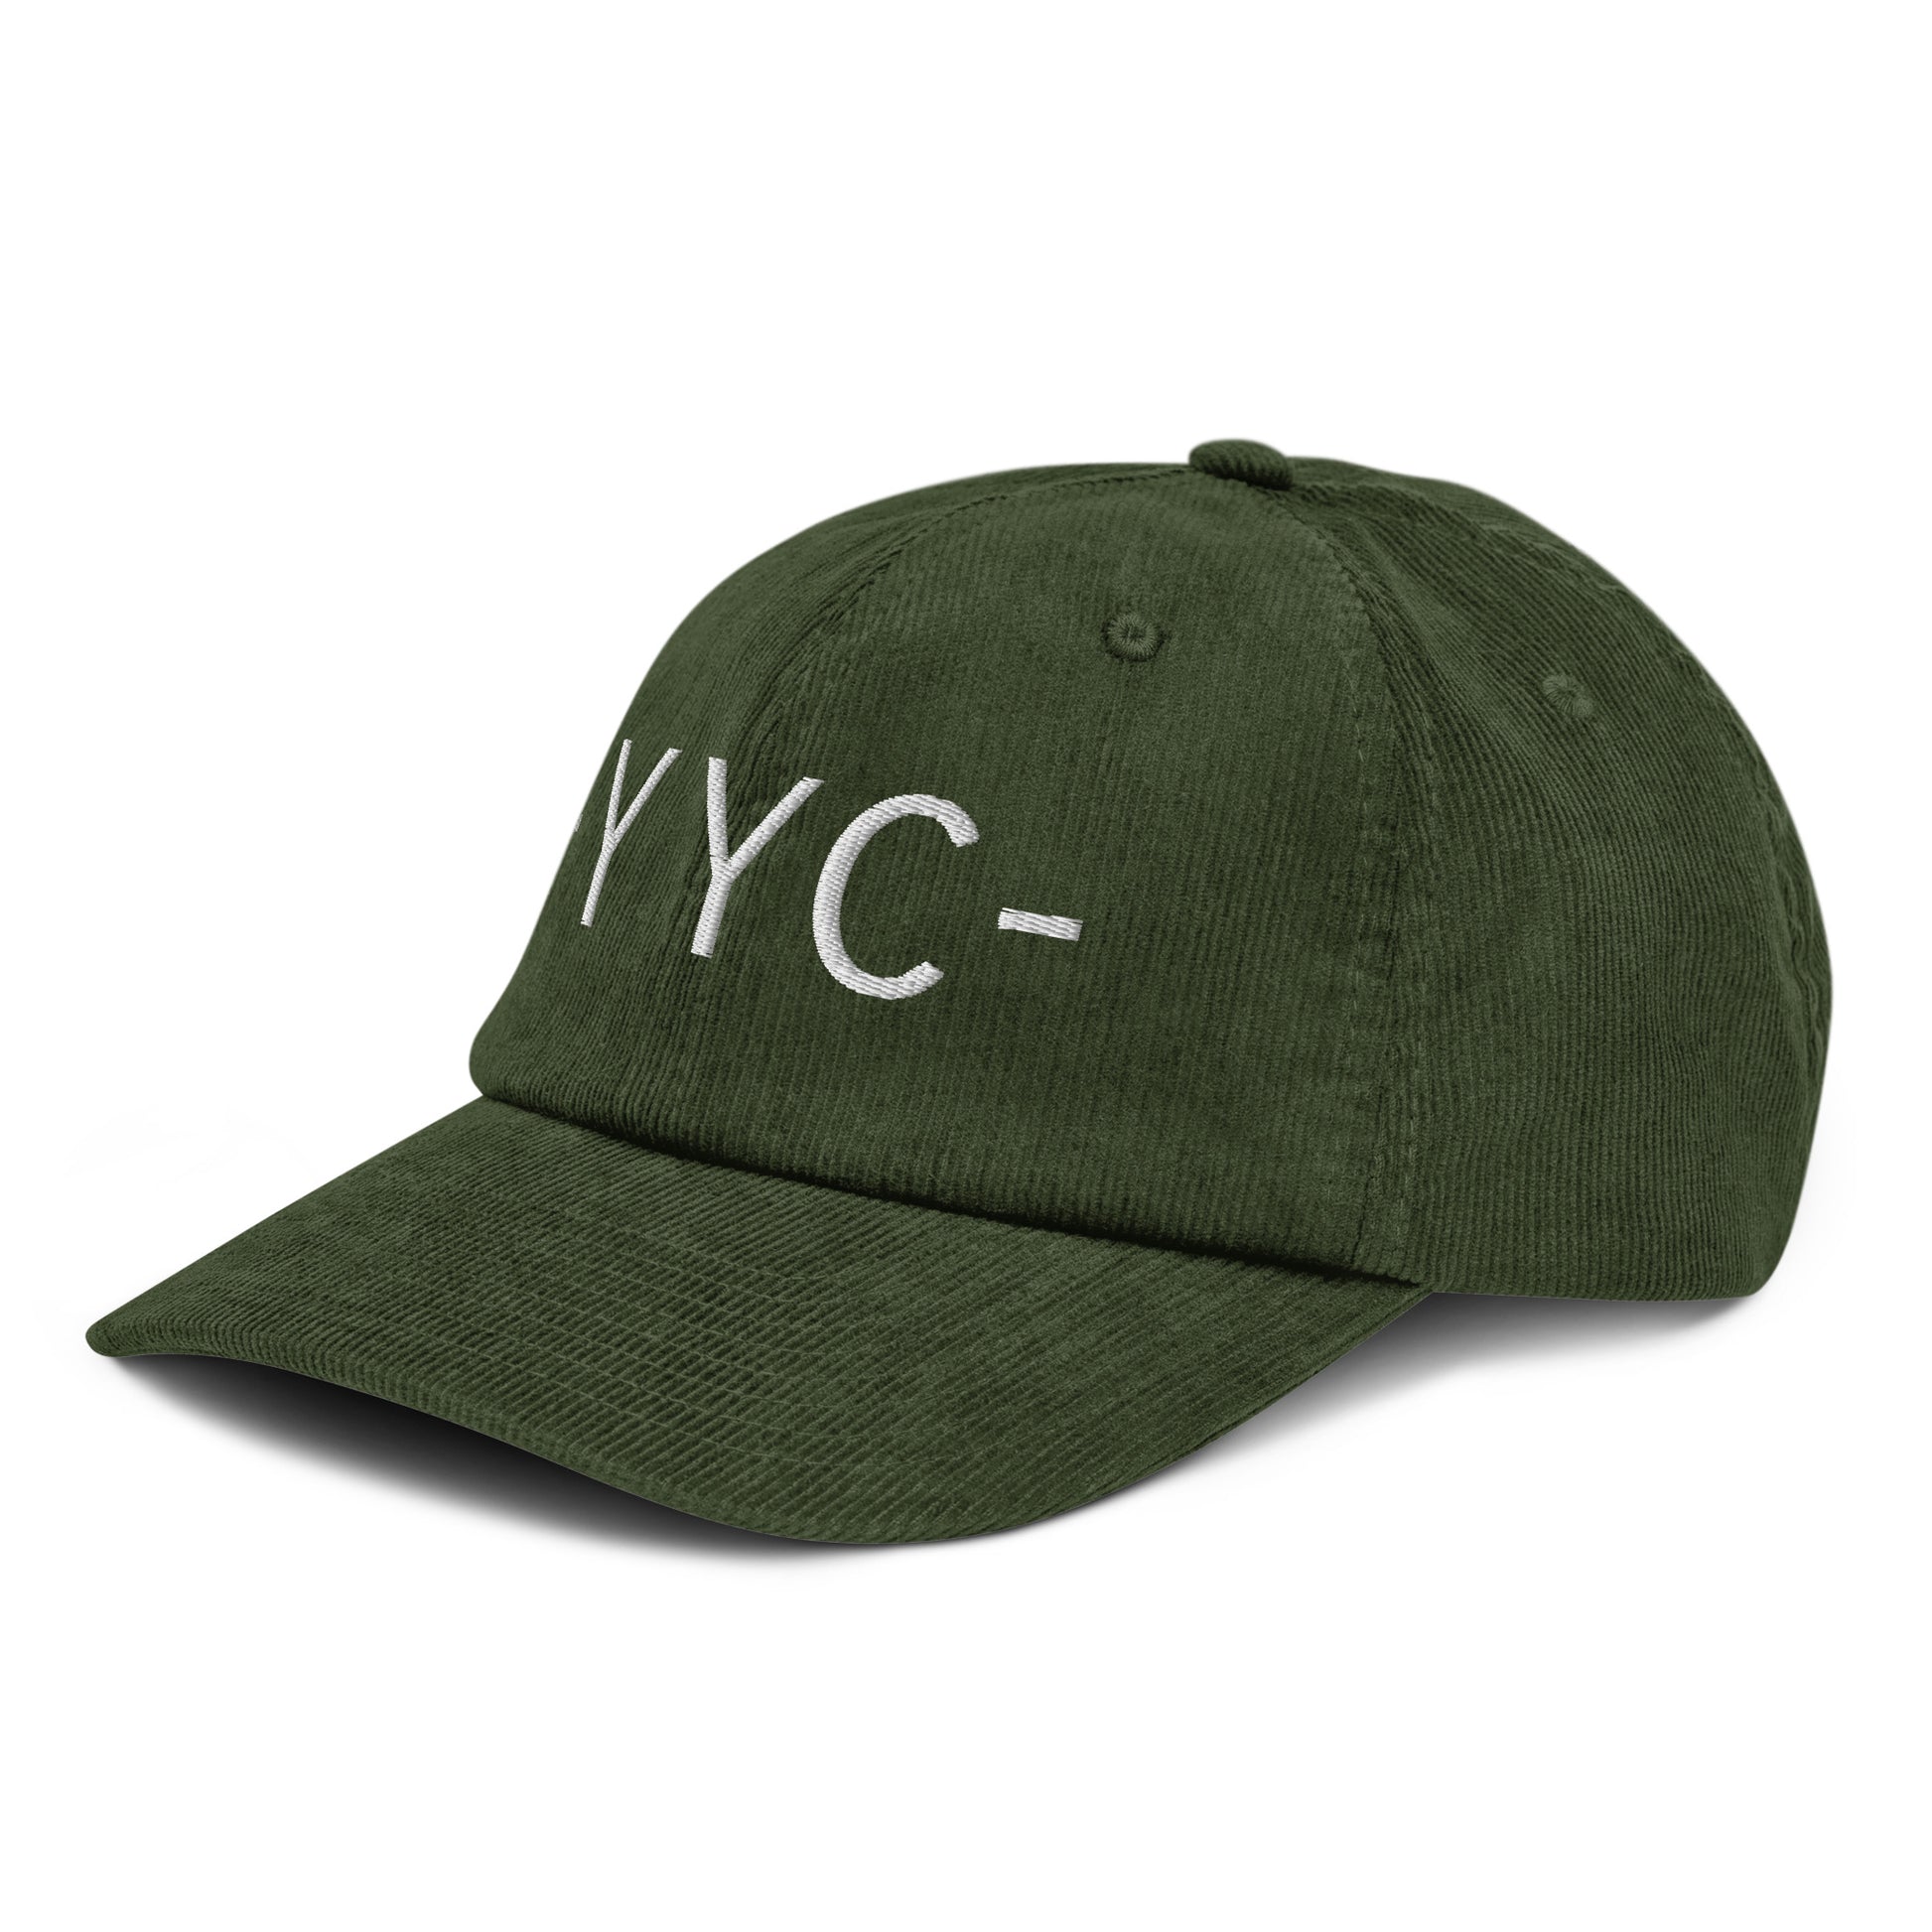 Souvenir Corduroy Hat - White • YYC Calgary • YHM Designs - Image 17